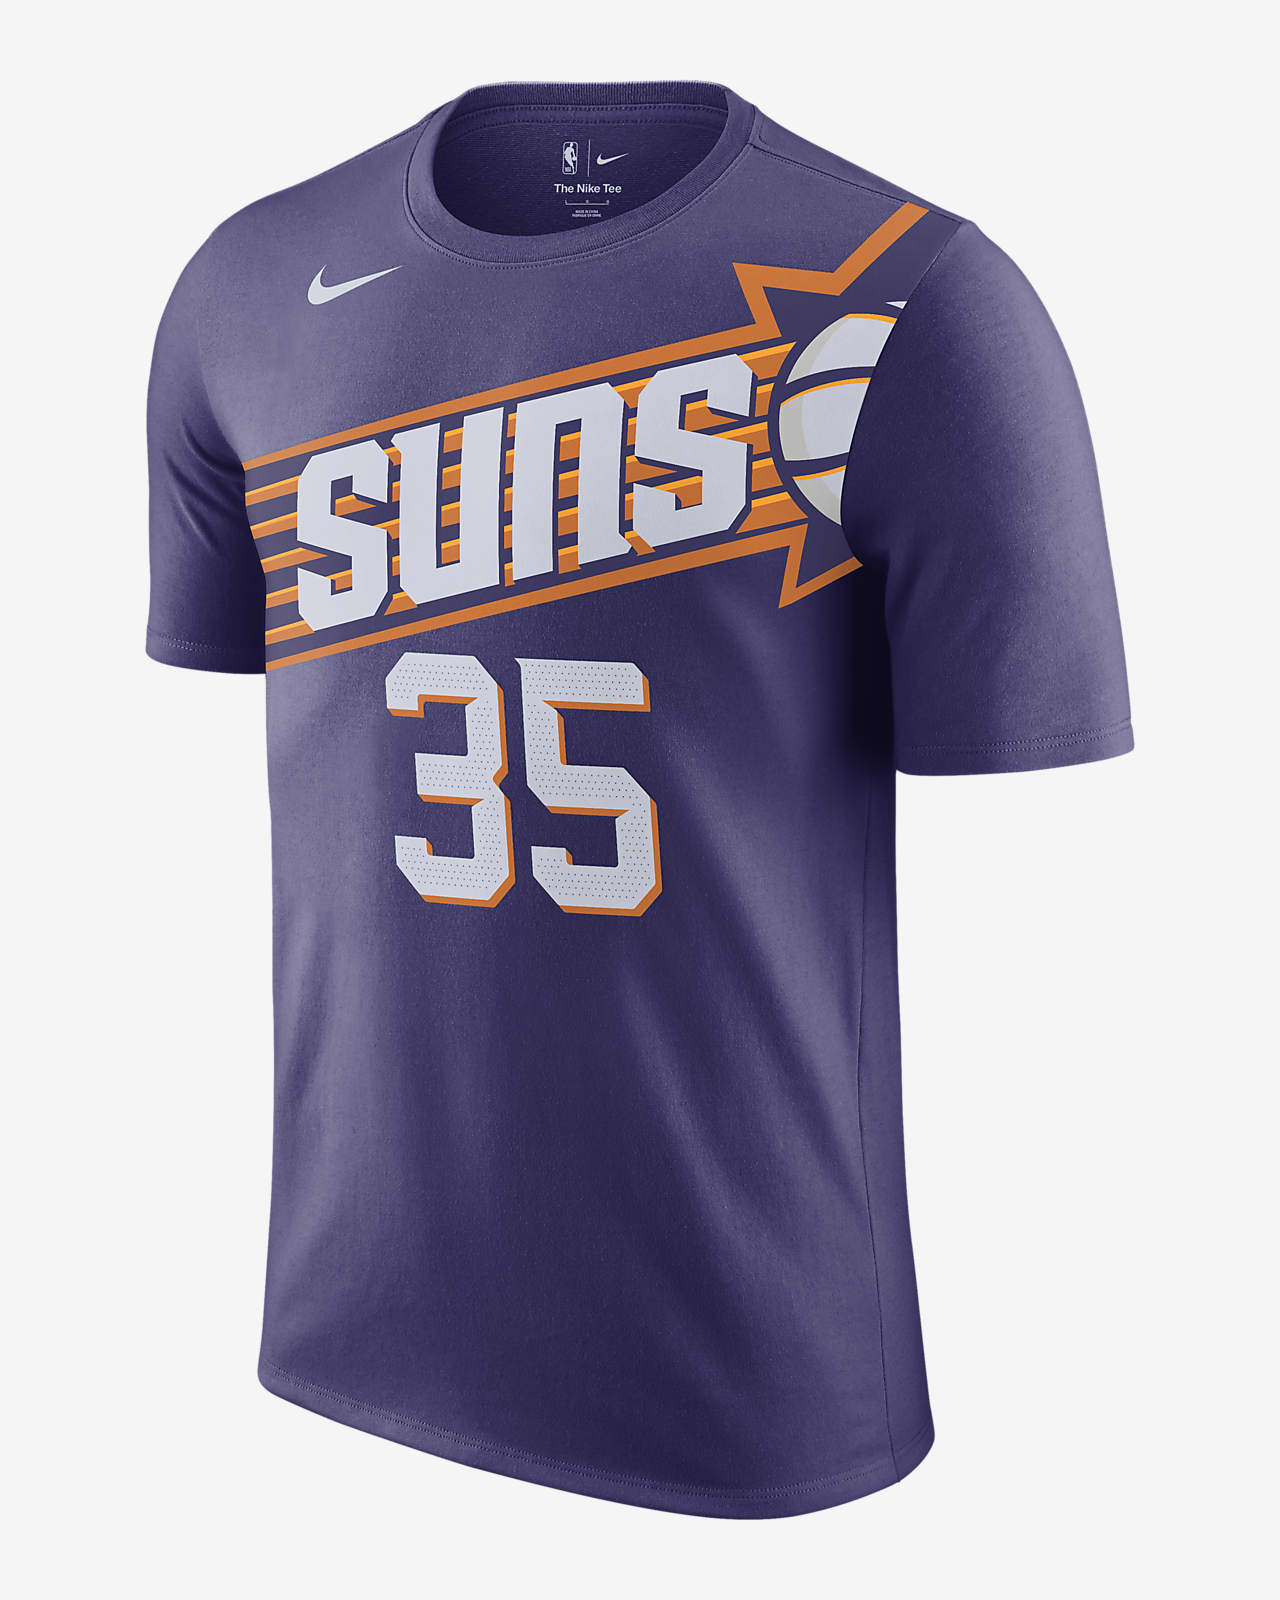 Kevin Durant Phoenix Suns Men's Nike NBA T-Shirt